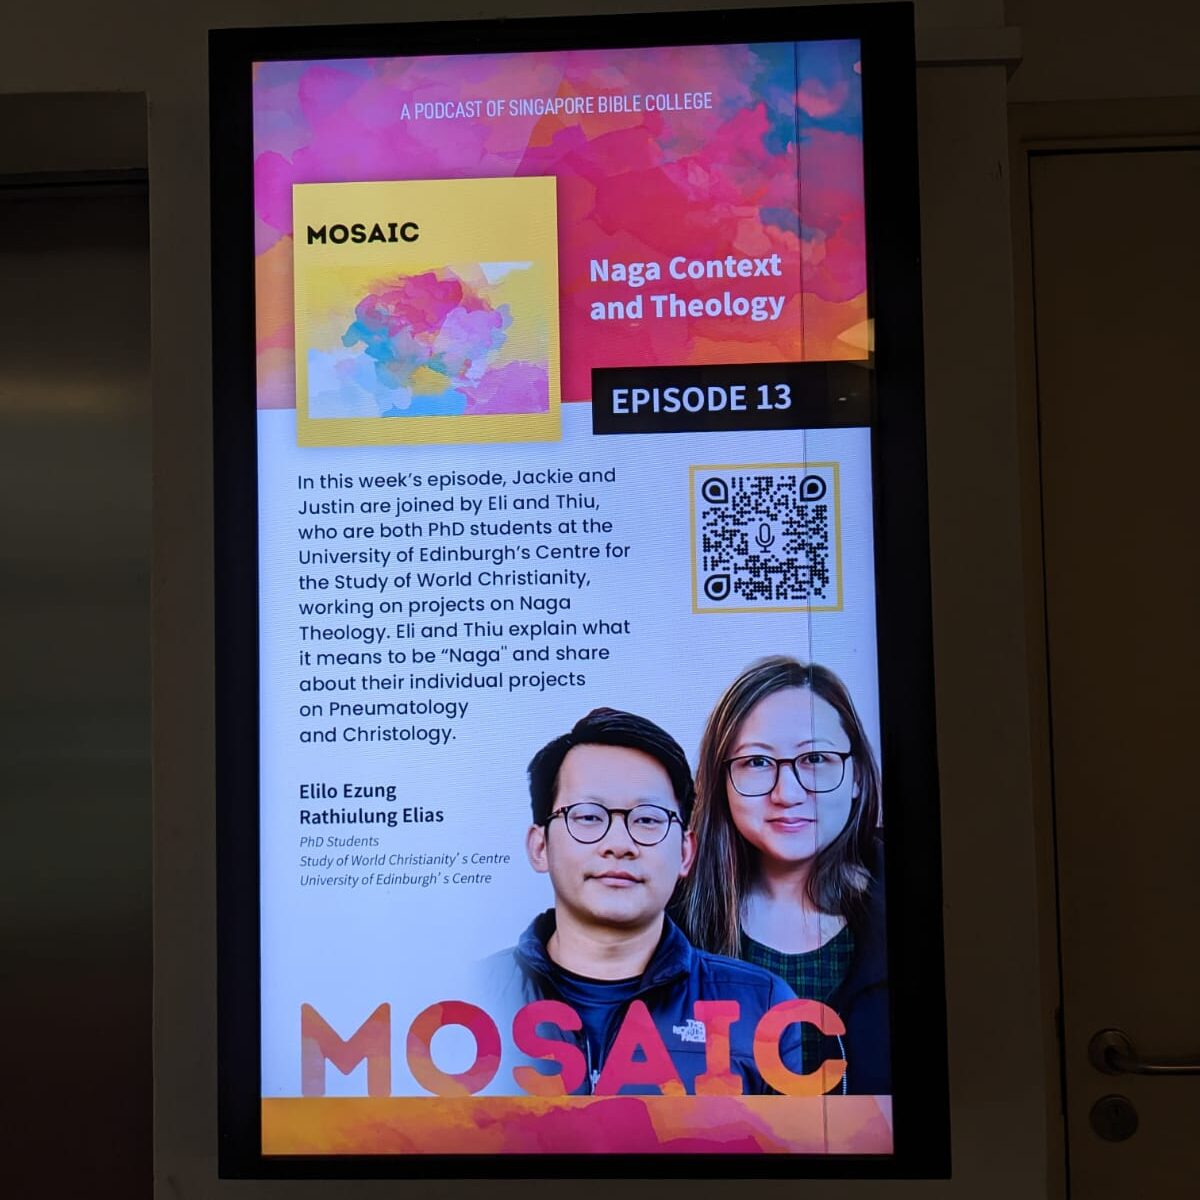 Mosaic Podcast: Naga Context and Theology